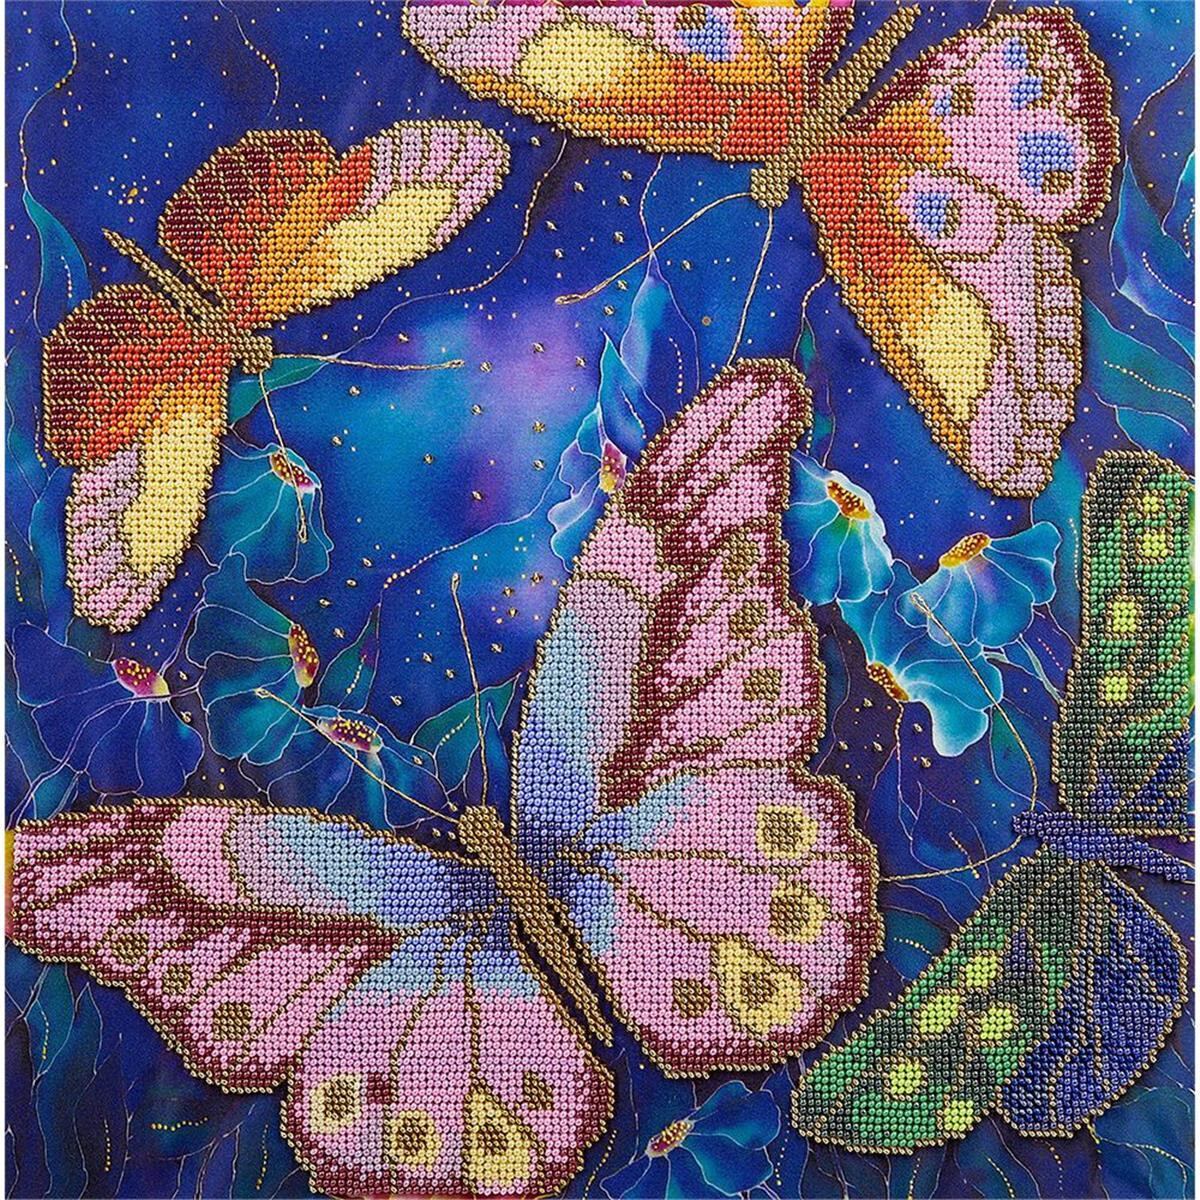 Panna beads stitching kit "Butterflies among...